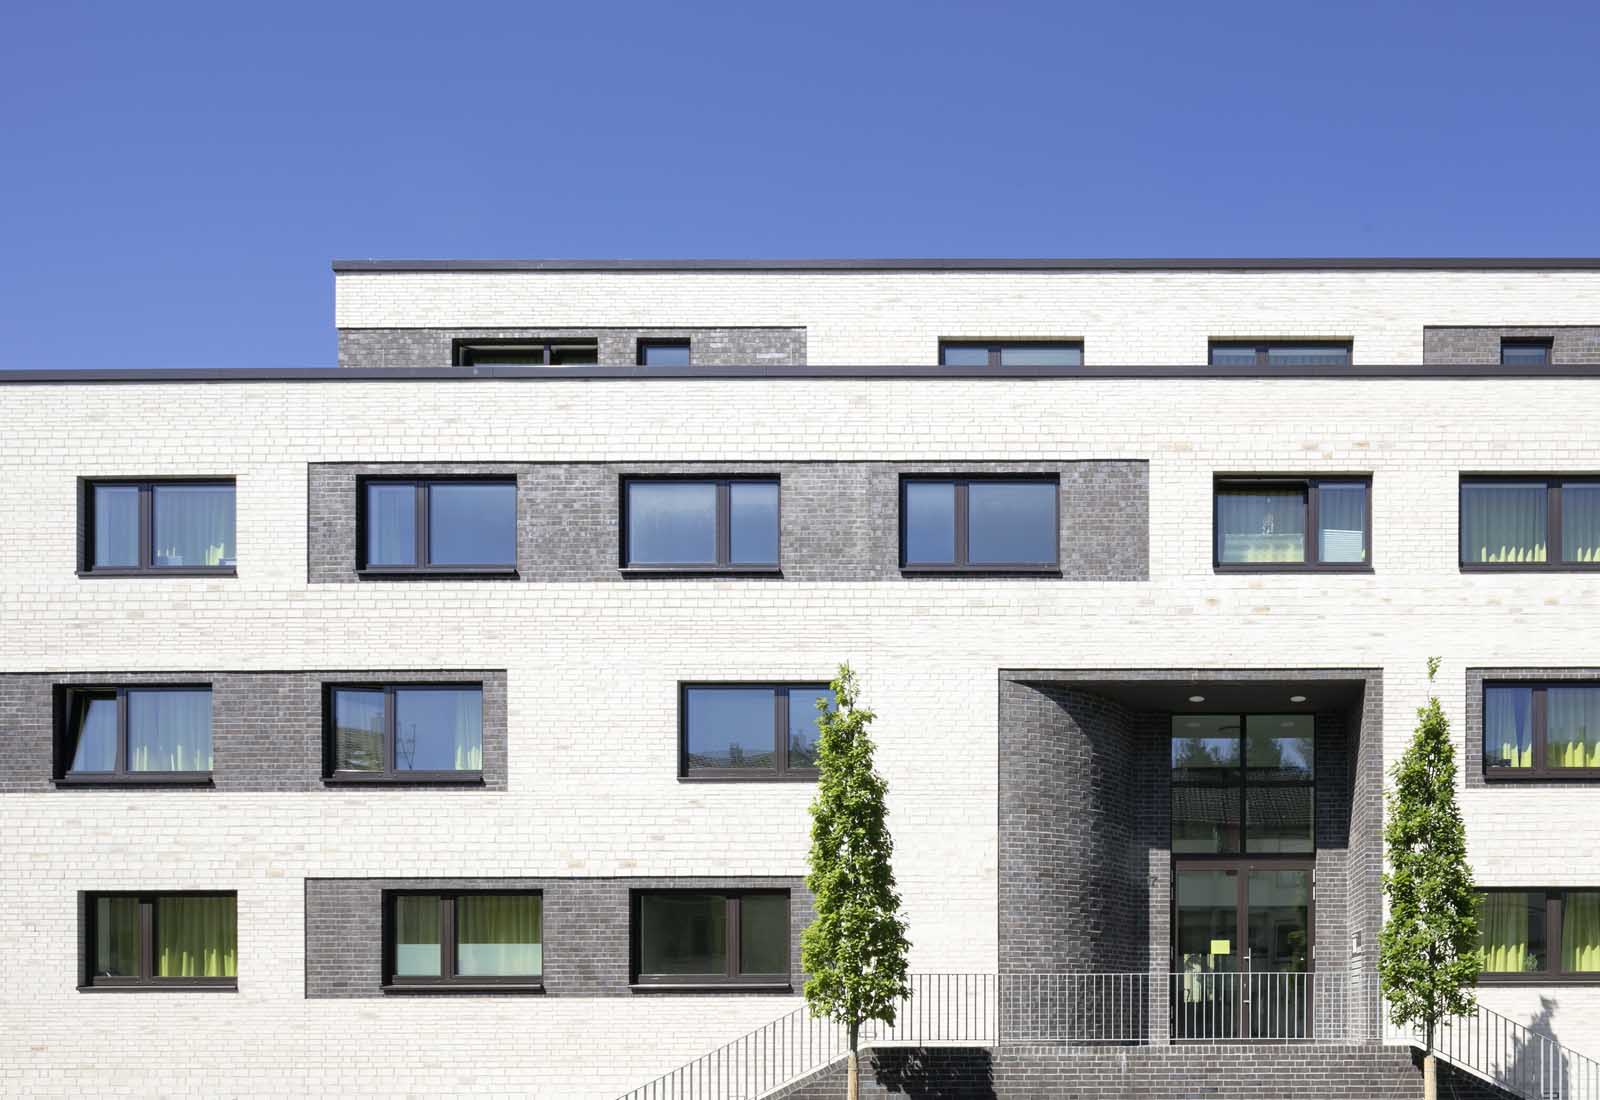 Architekt Bonn Studierendenwohnheim Drususstraße - Neubau von 73 Studierendenapartments in Bonn-Castell, Bodendenkmal, KfW-55 - Koenigs Rütter Architekten